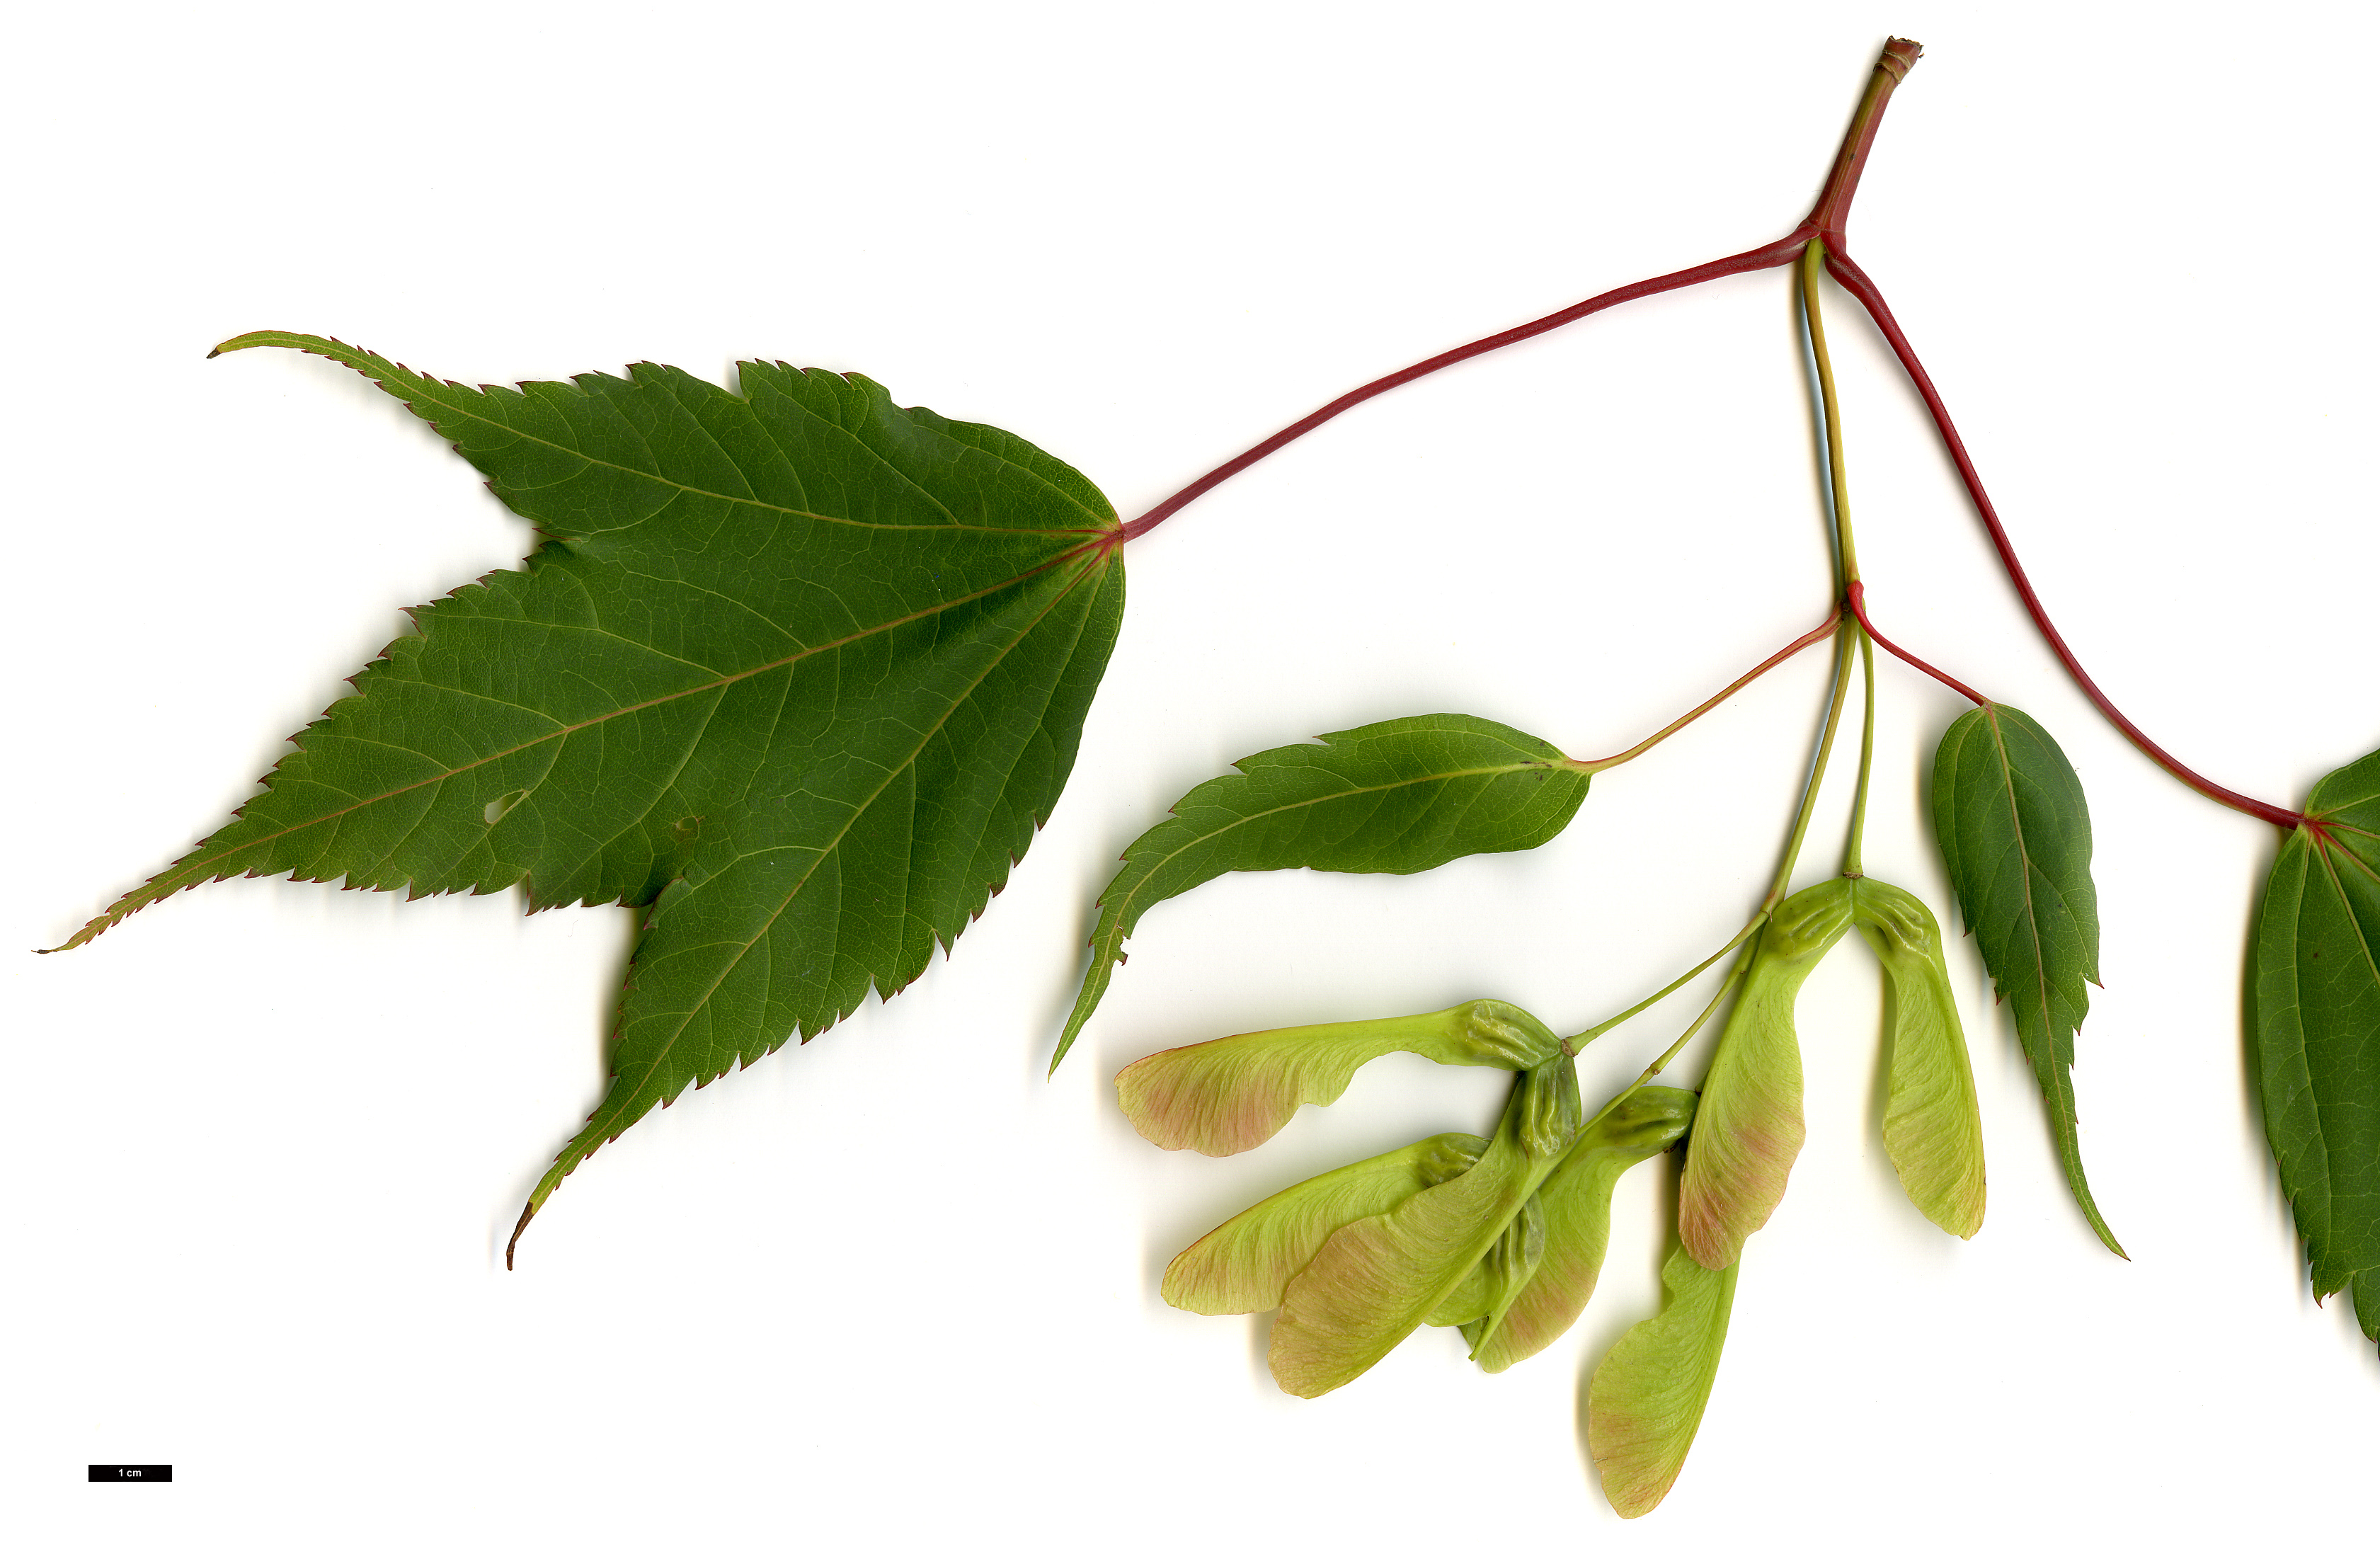 High resolution image: Family: Sapindaceae - Genus: Acer - Taxon: acuminatum